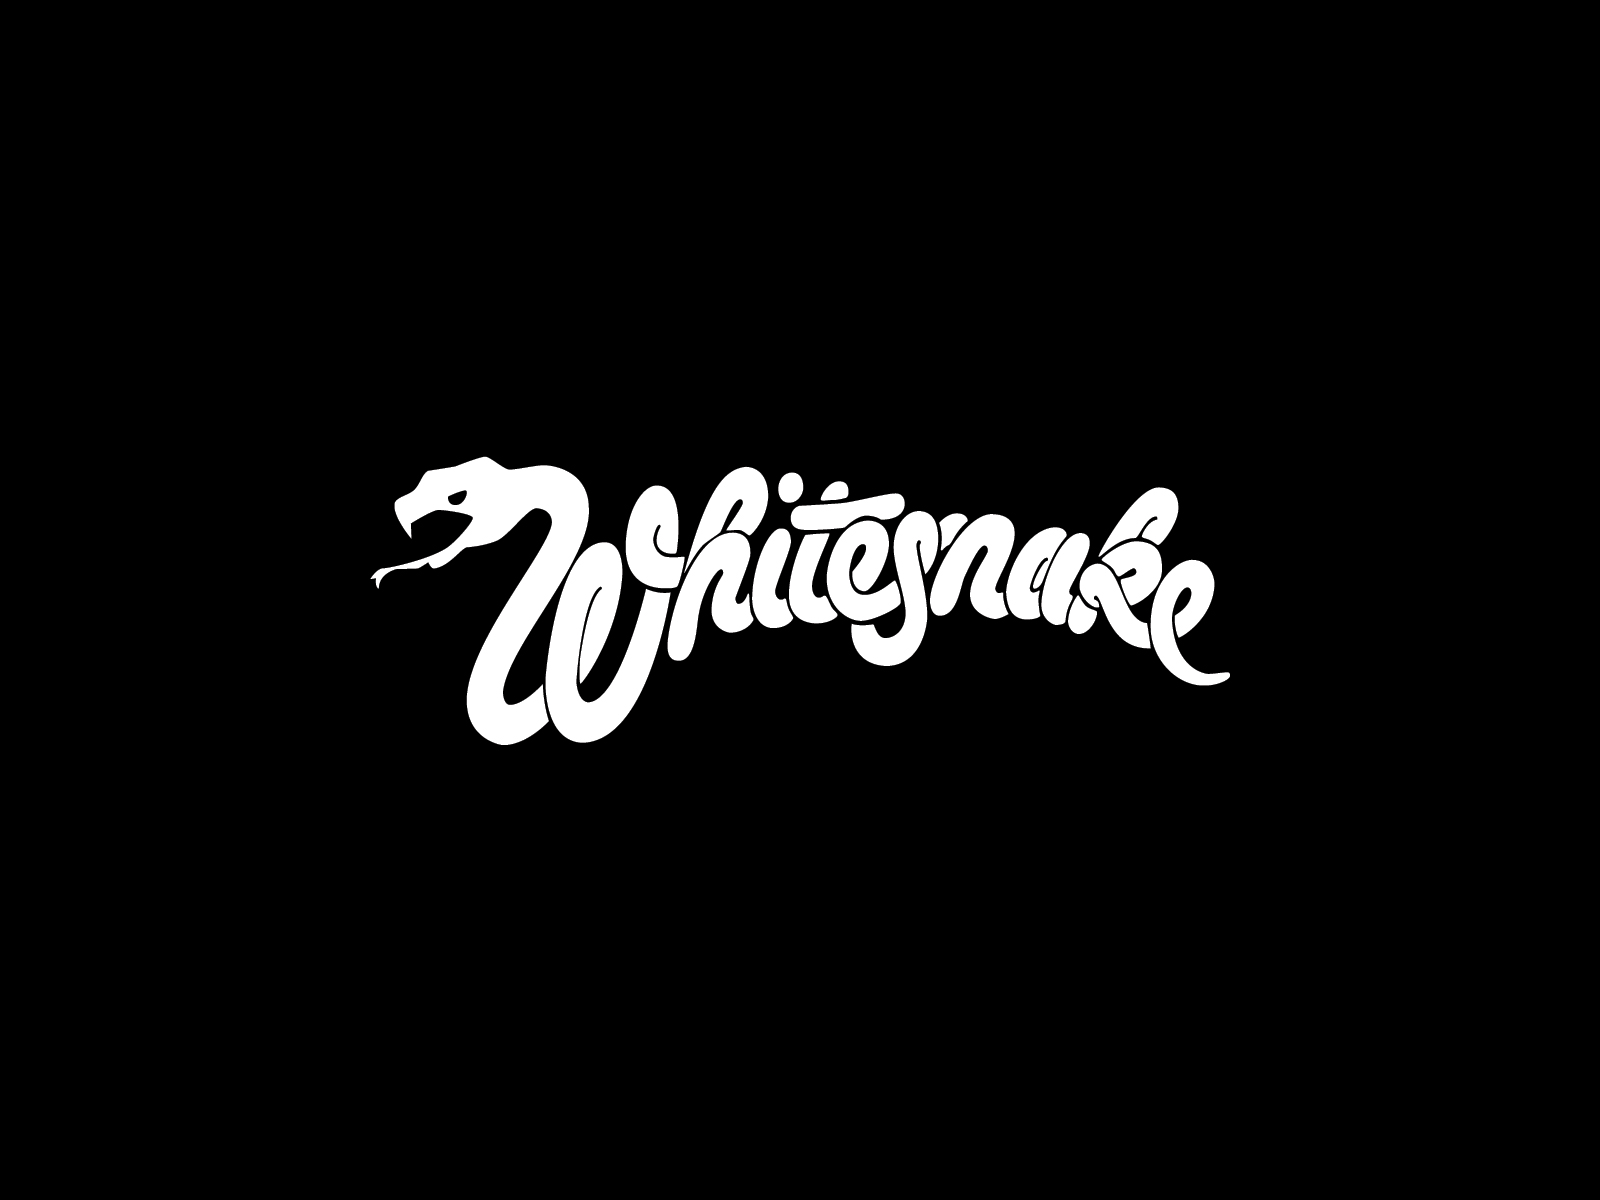 Whitesnake band logo and wallpaper